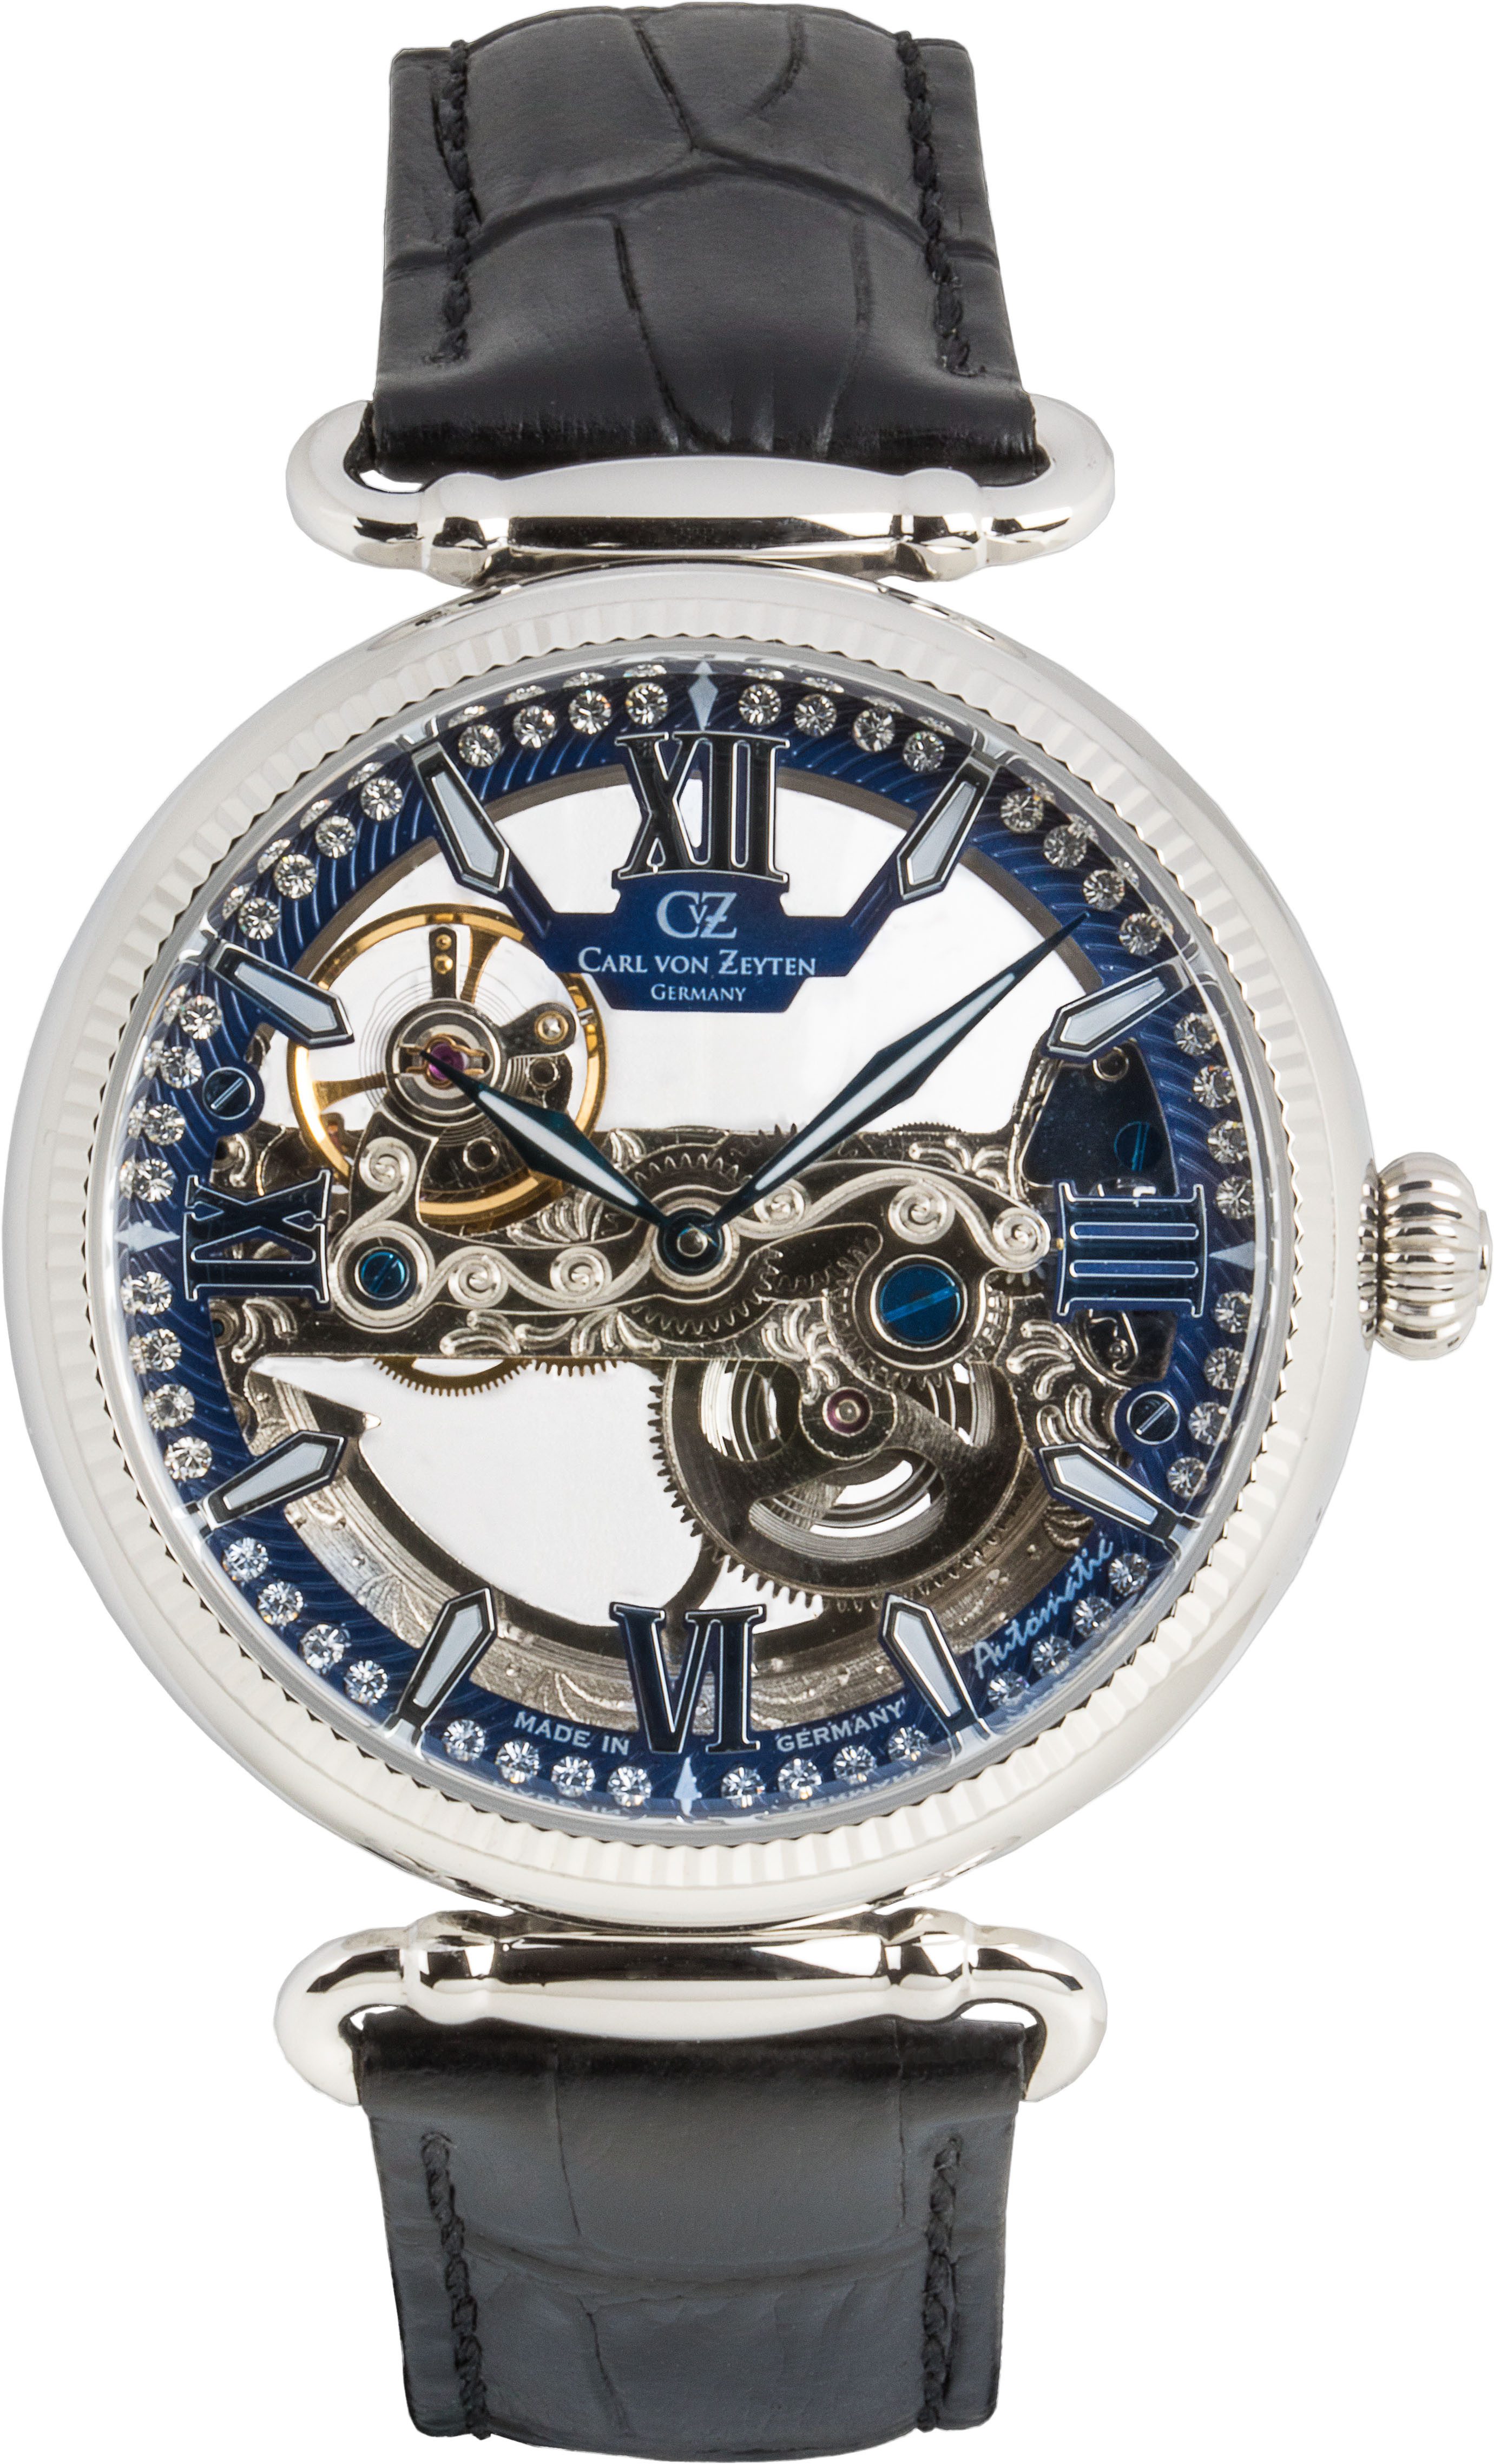 Carl von Zeyten Automatikuhr Häusern, Armbanduhr, mechanische Uhr, Damenuhr, Made in Germany